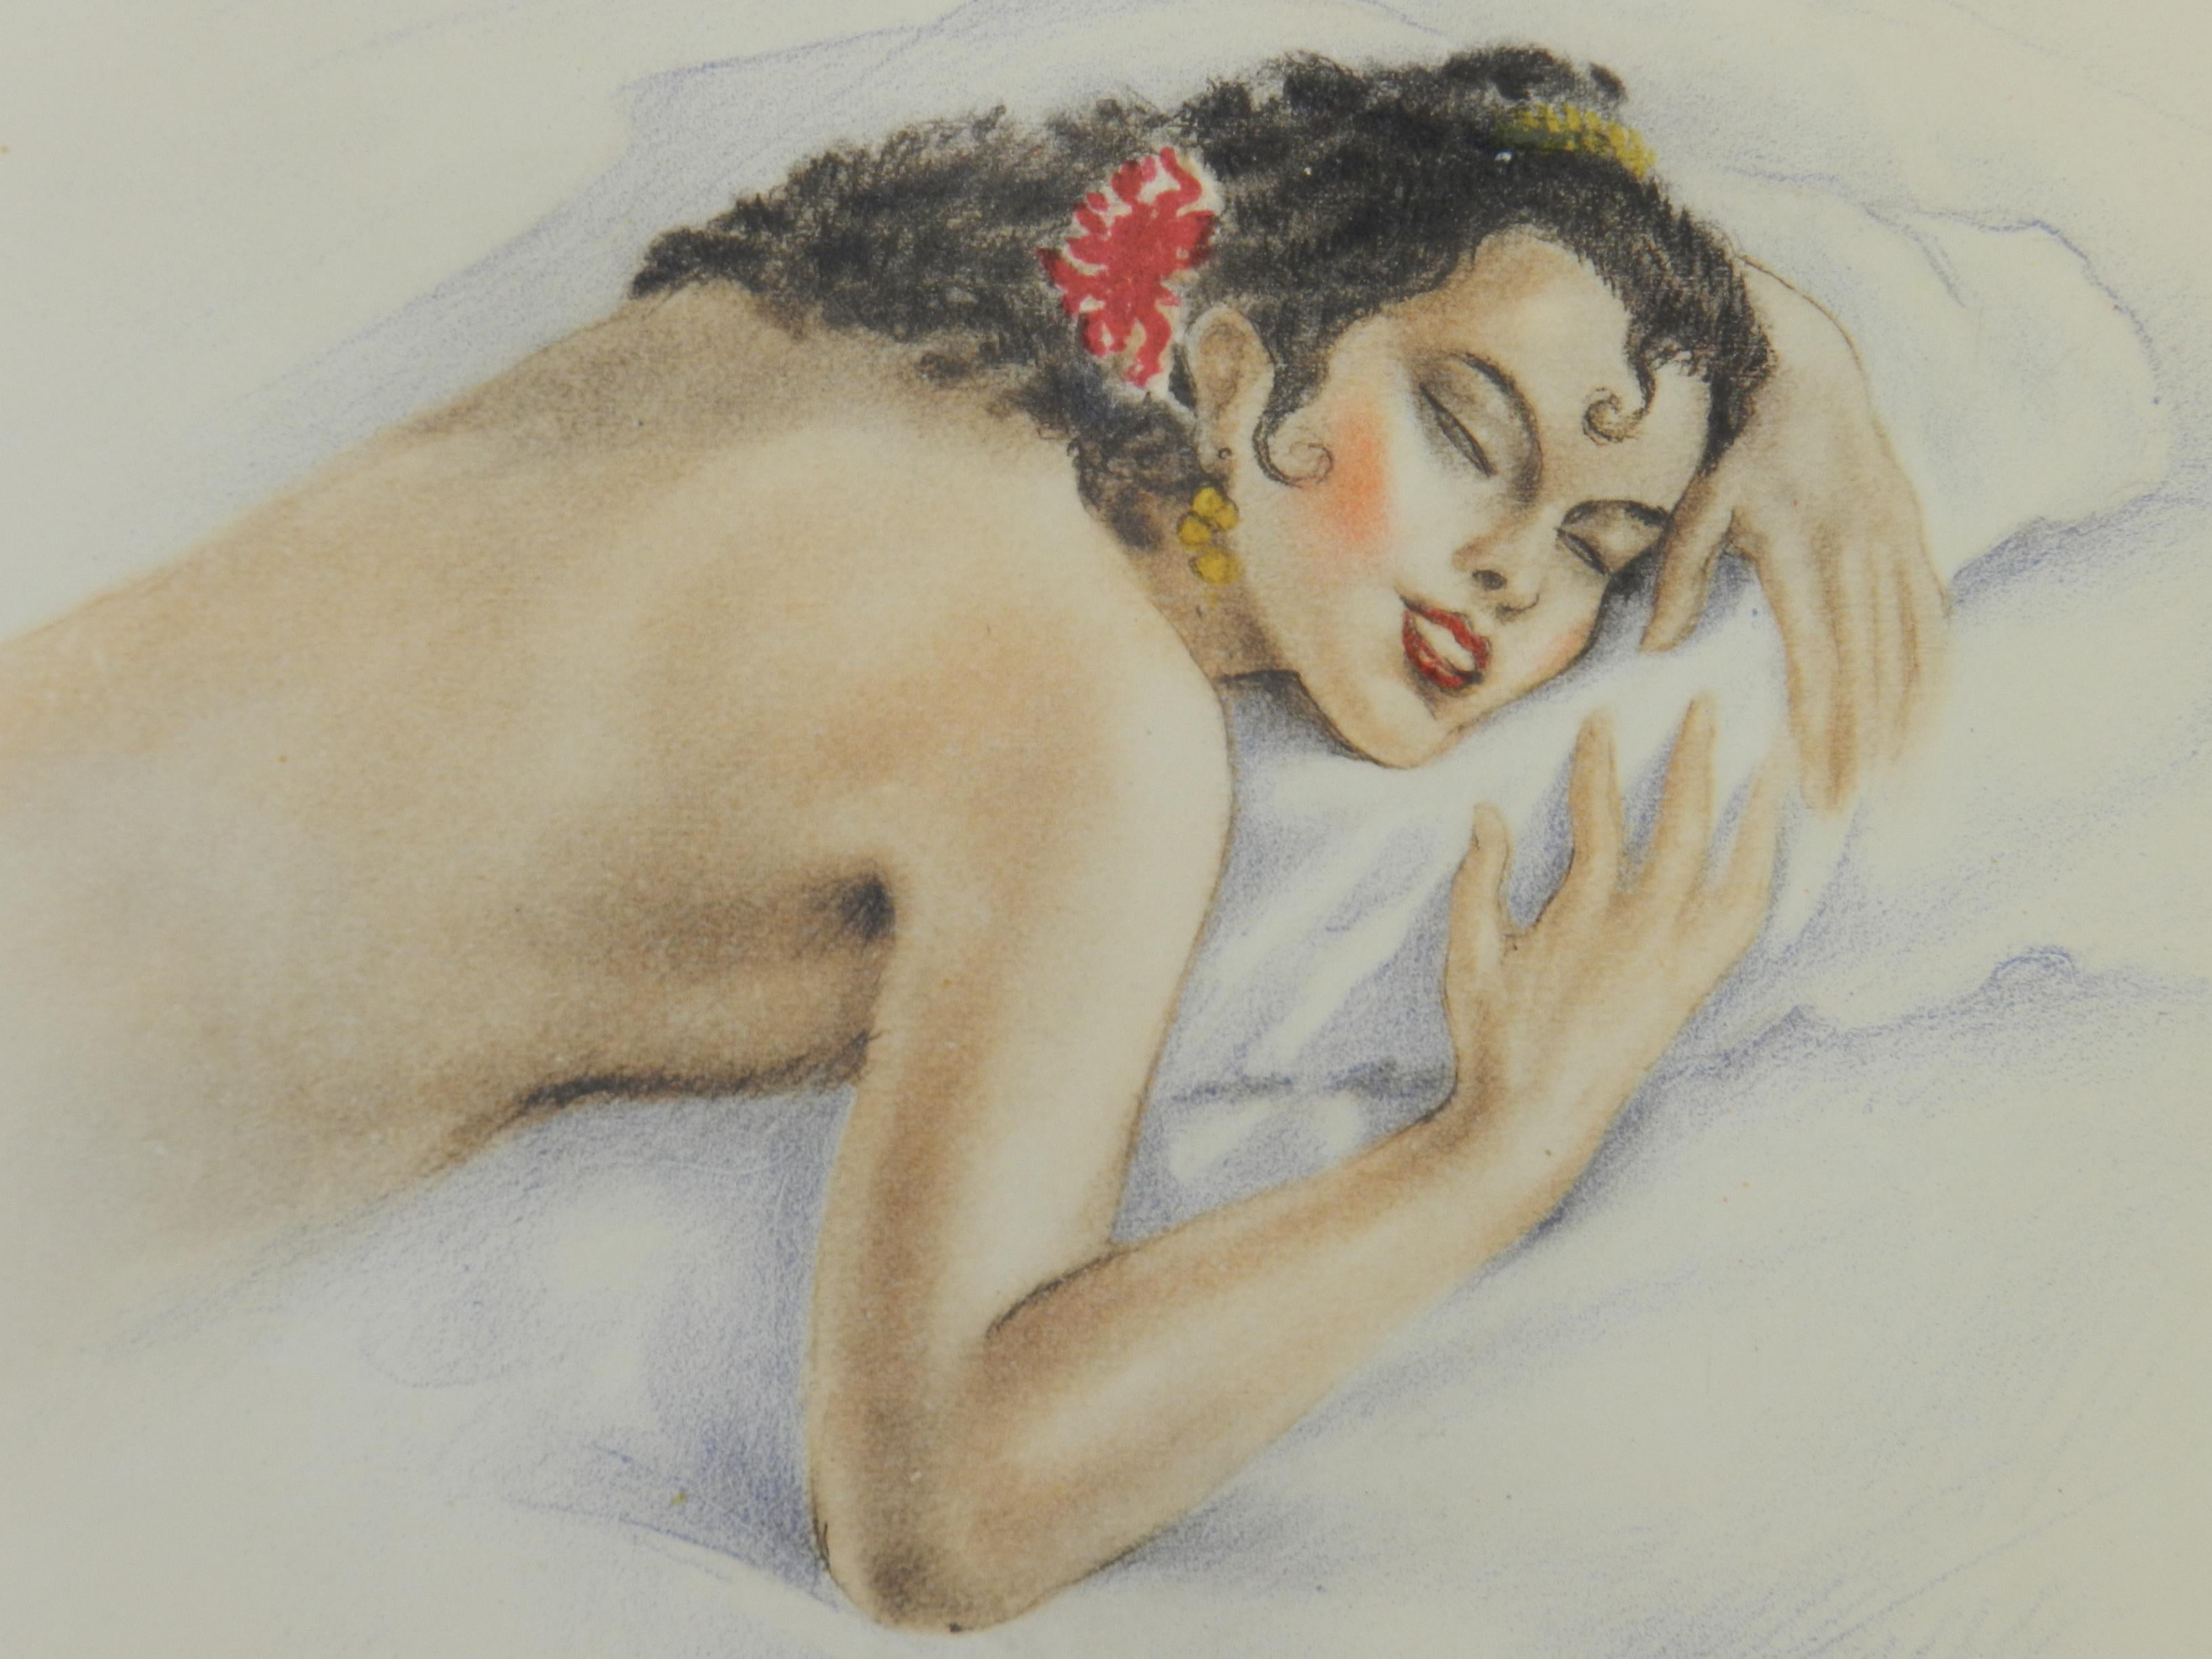 Spanische Dame von Edward Chimot, nudefarbener Lithographie, um 1946  – Print von Edouard Chimot